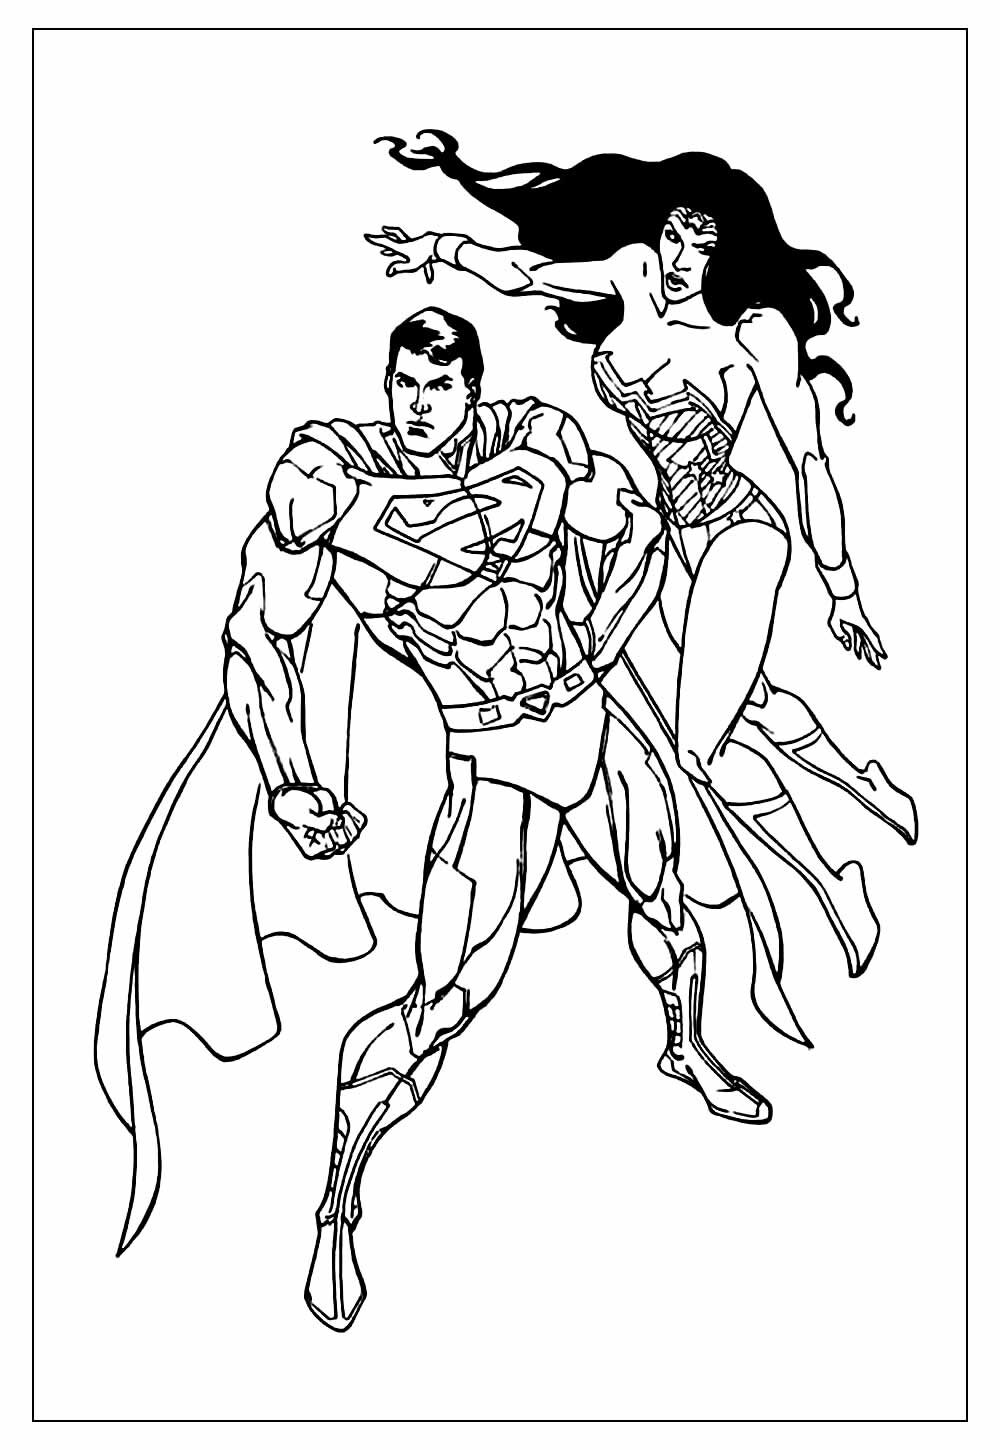 Imagem do Super-Homem e da Mulher-Maravilha para colorir